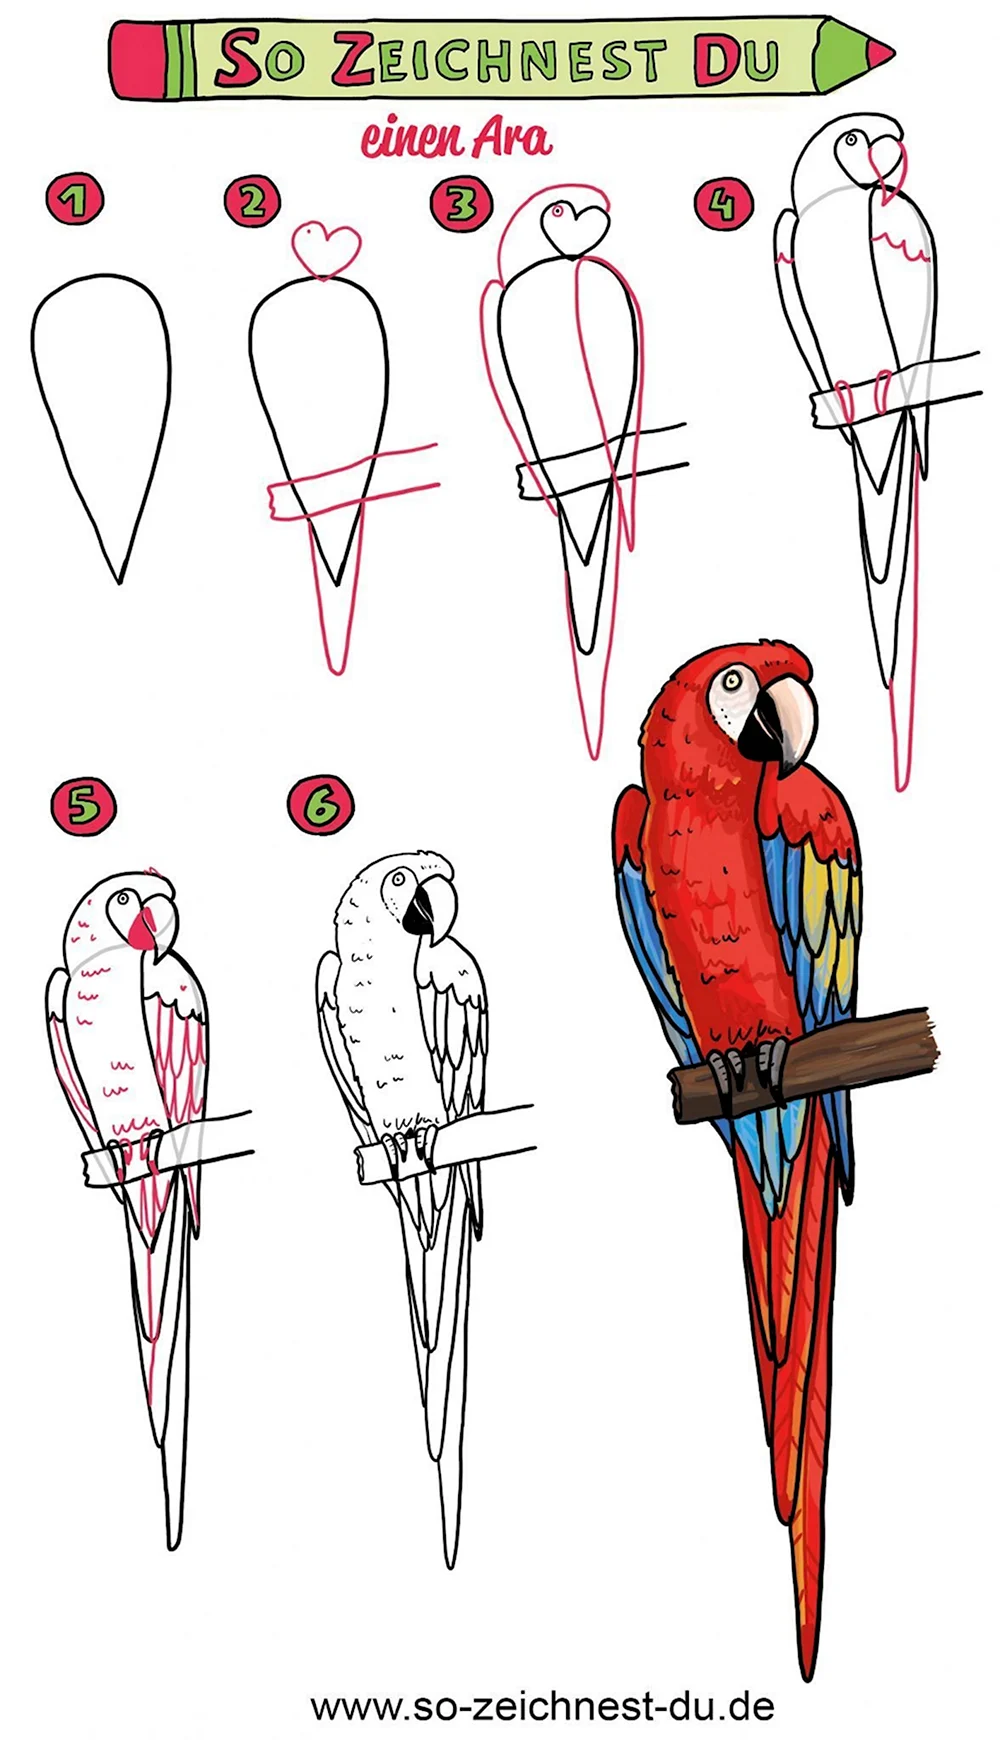 Как рисовать попугая